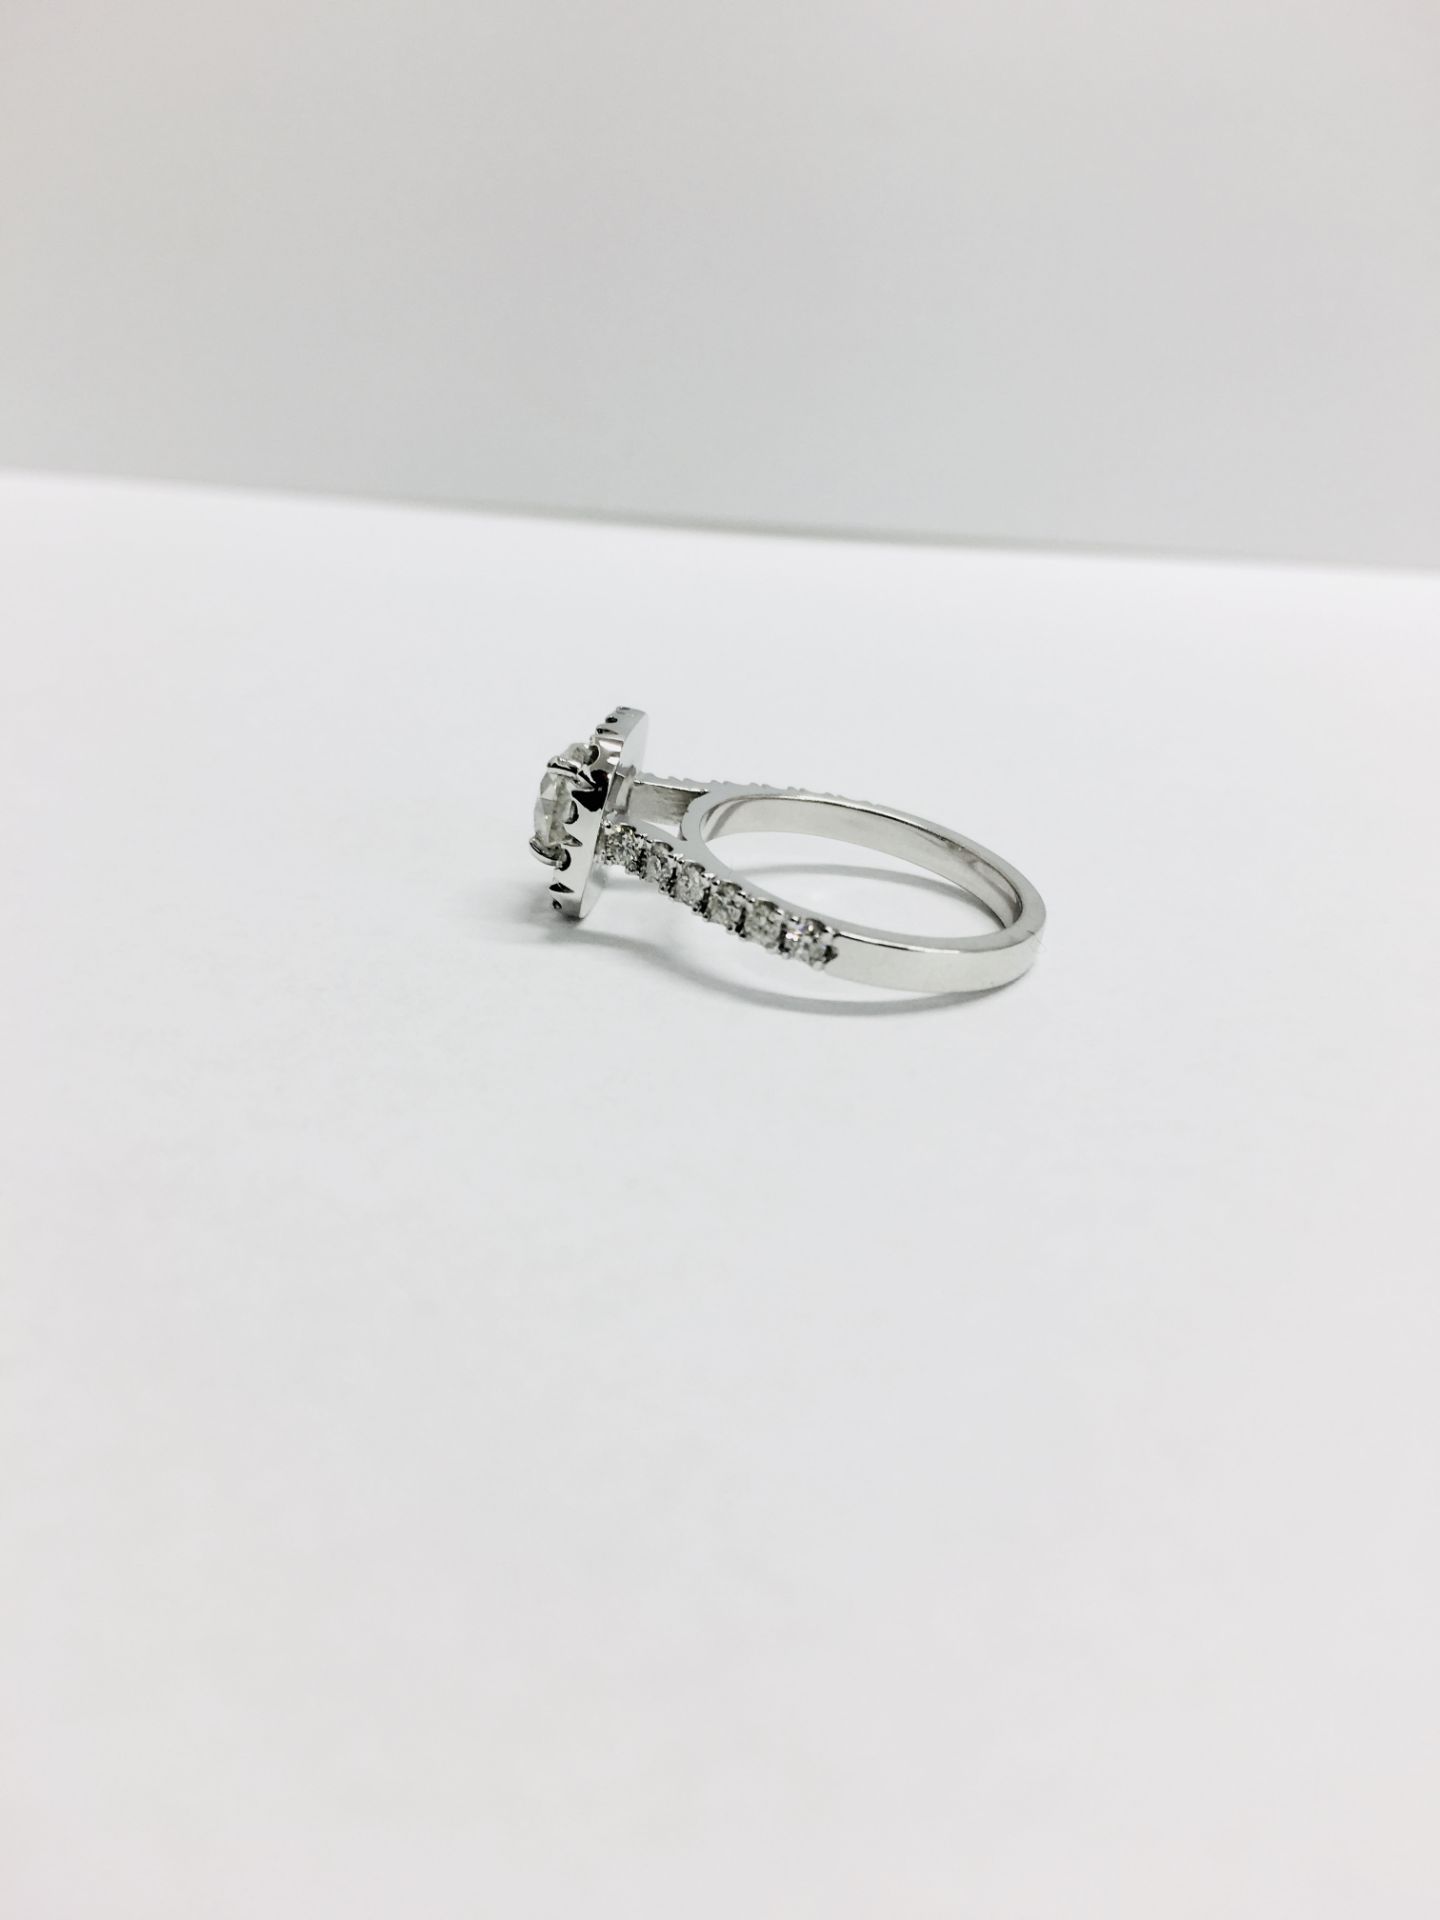 18ct white gold Halo style Diamond ring,0.50ct brilliant cut centre,h colour vs clarity,0.25ct - Image 3 of 6